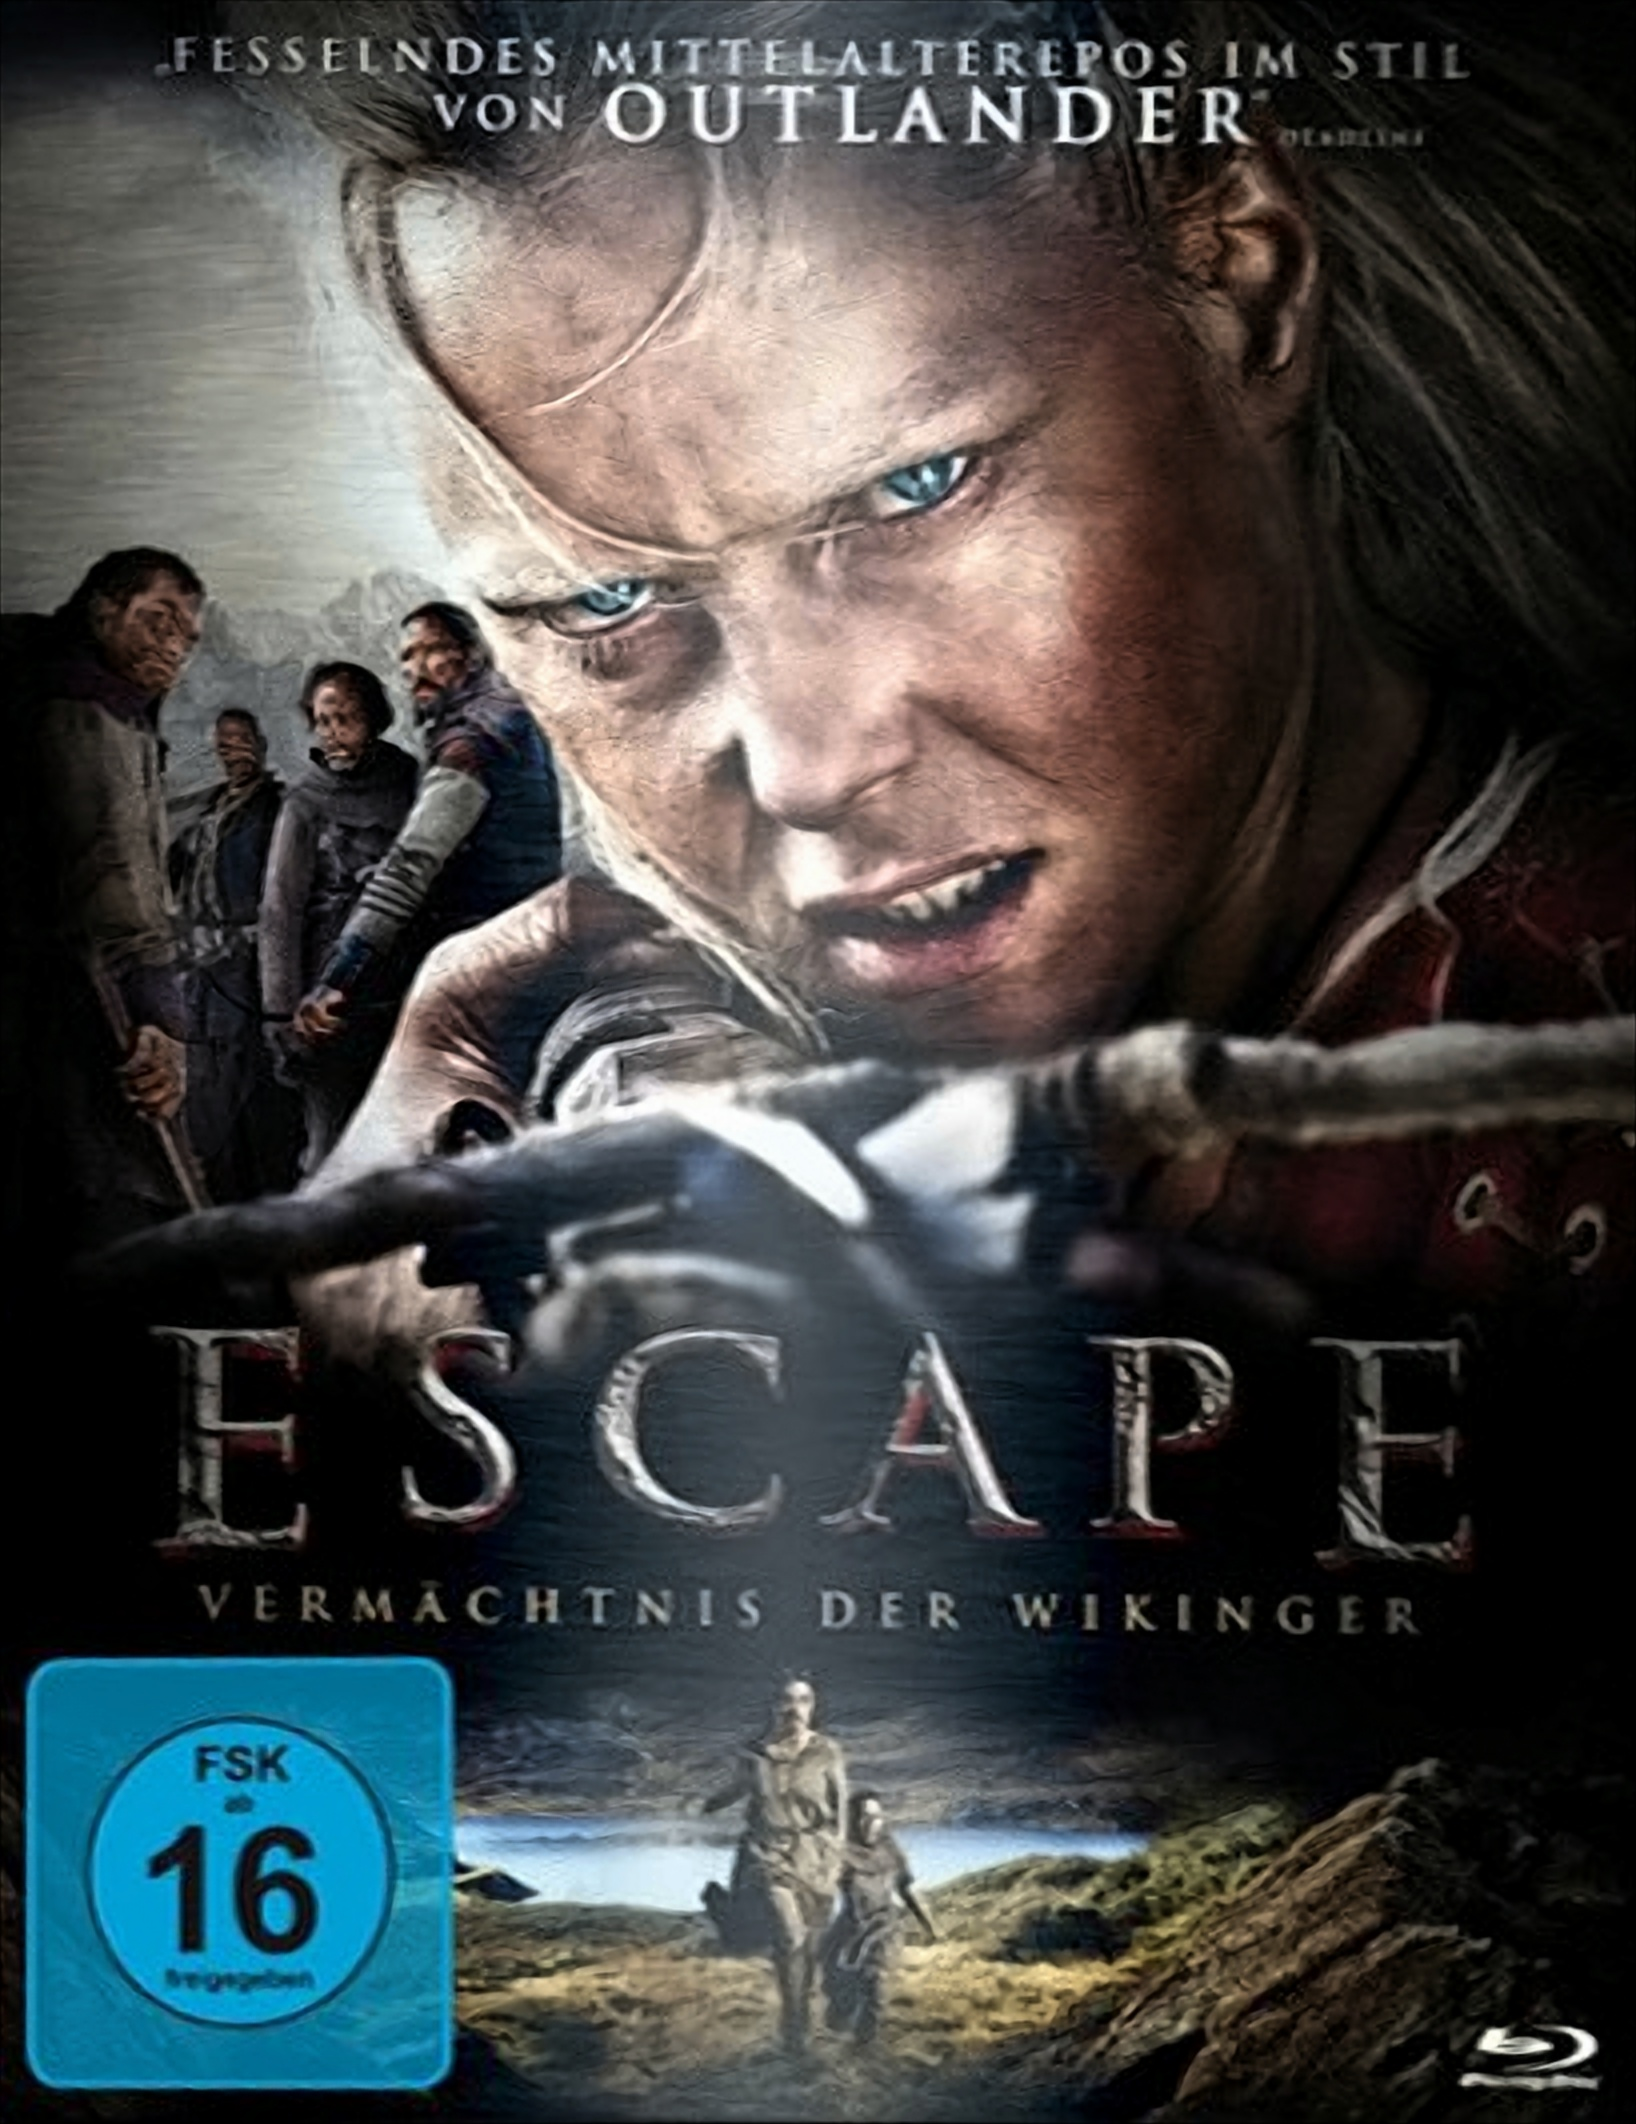 Vermächtnis - Wikinger Escape Blu-ray der (Steelbook)